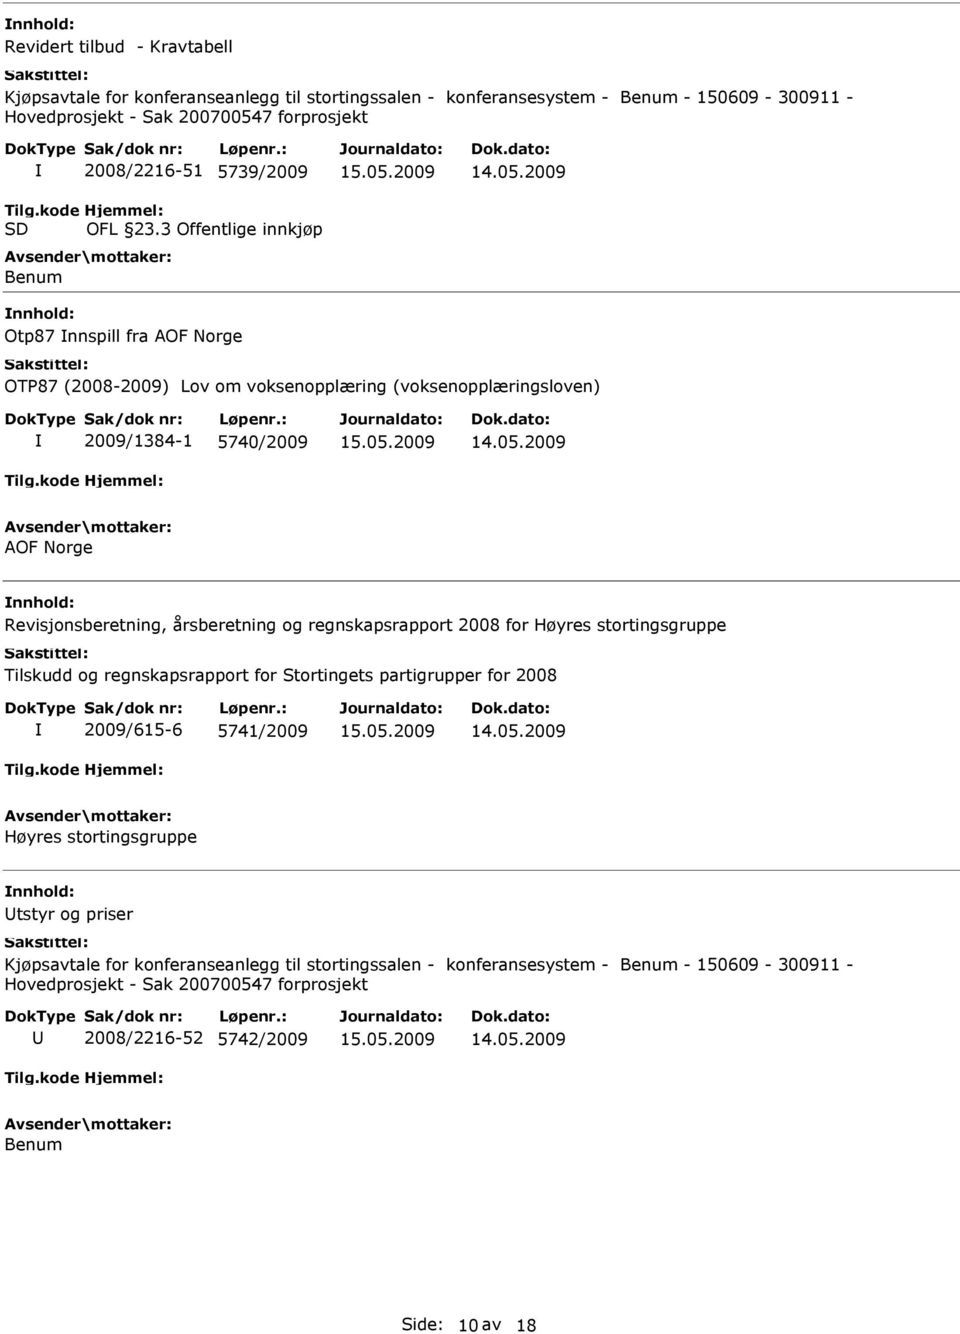 3 Offentlige innkjøp Benum Otp87 nnspill fra AOF Norge OTP87 (2008-2009) Lov om voksenopplæring (voksenopplæringsloven) 2009/1384-1 5740/2009 AOF Norge Revisjonsberetning, årsberetning